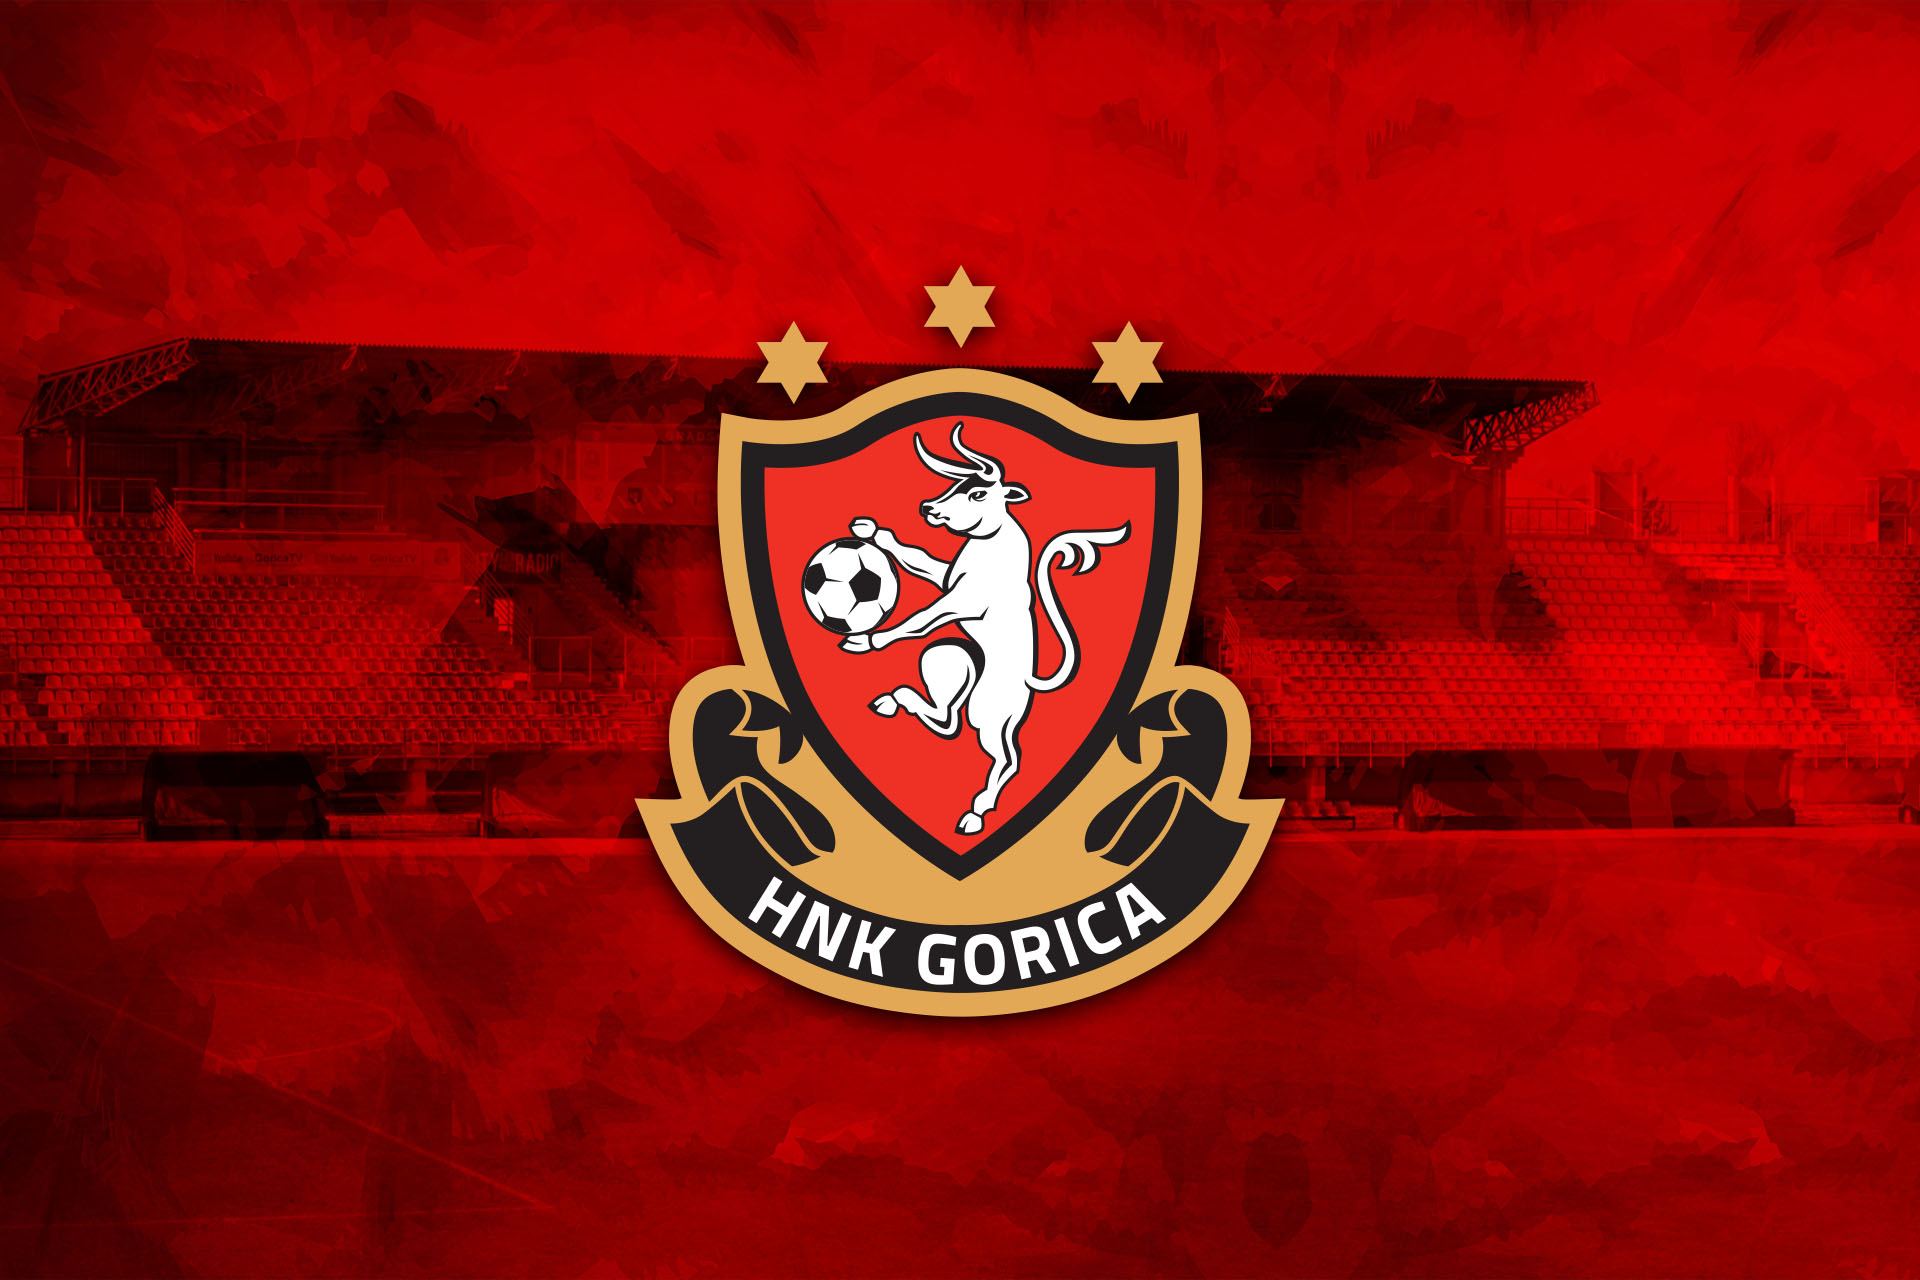 Službeno priopćenje HNK Gorica